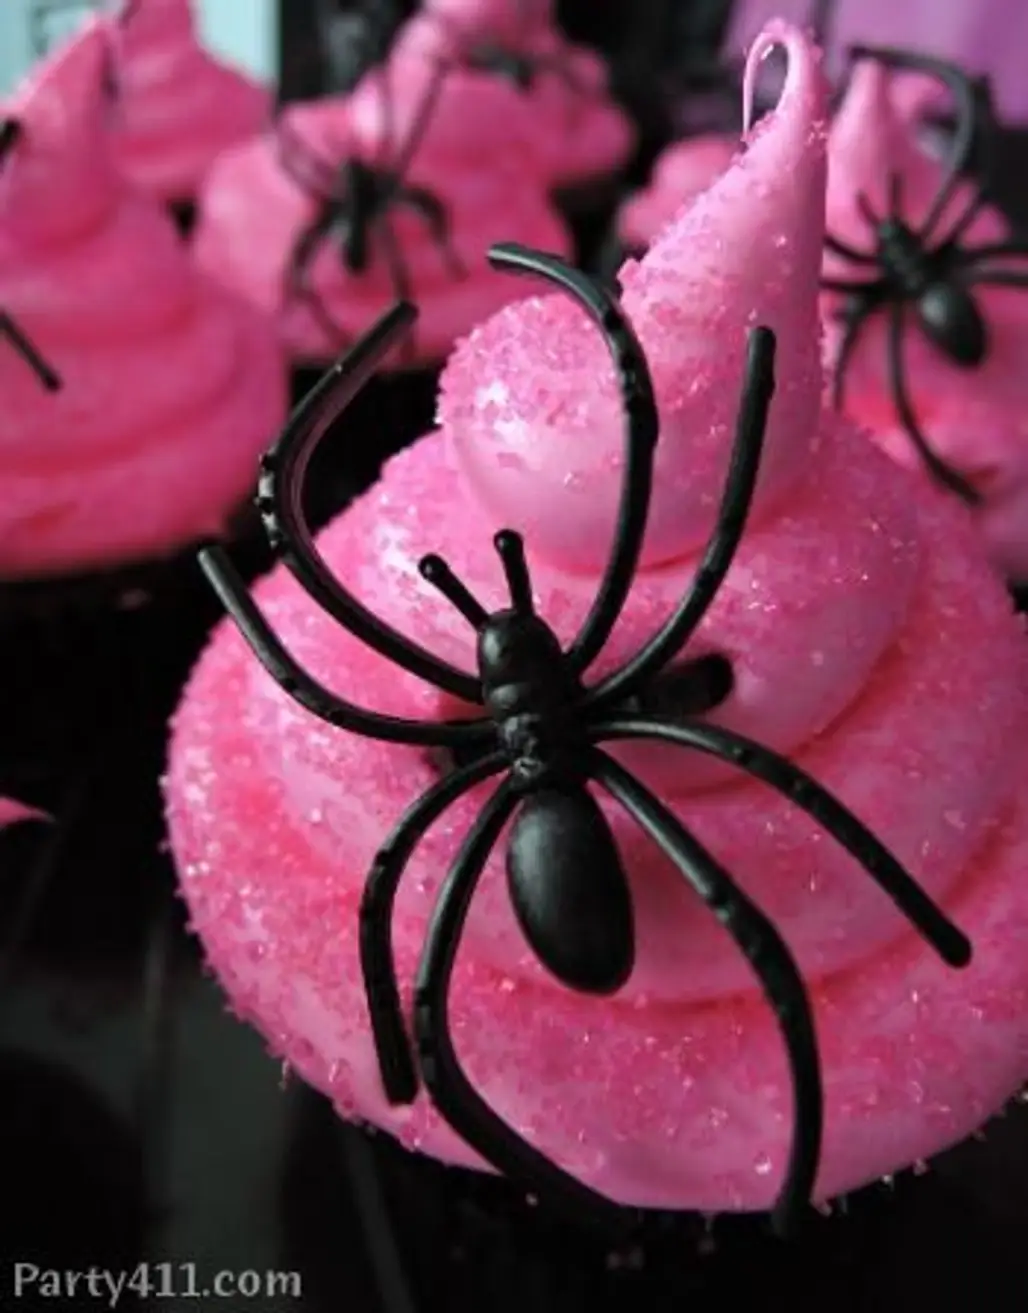 Black Spider against Bright Pink